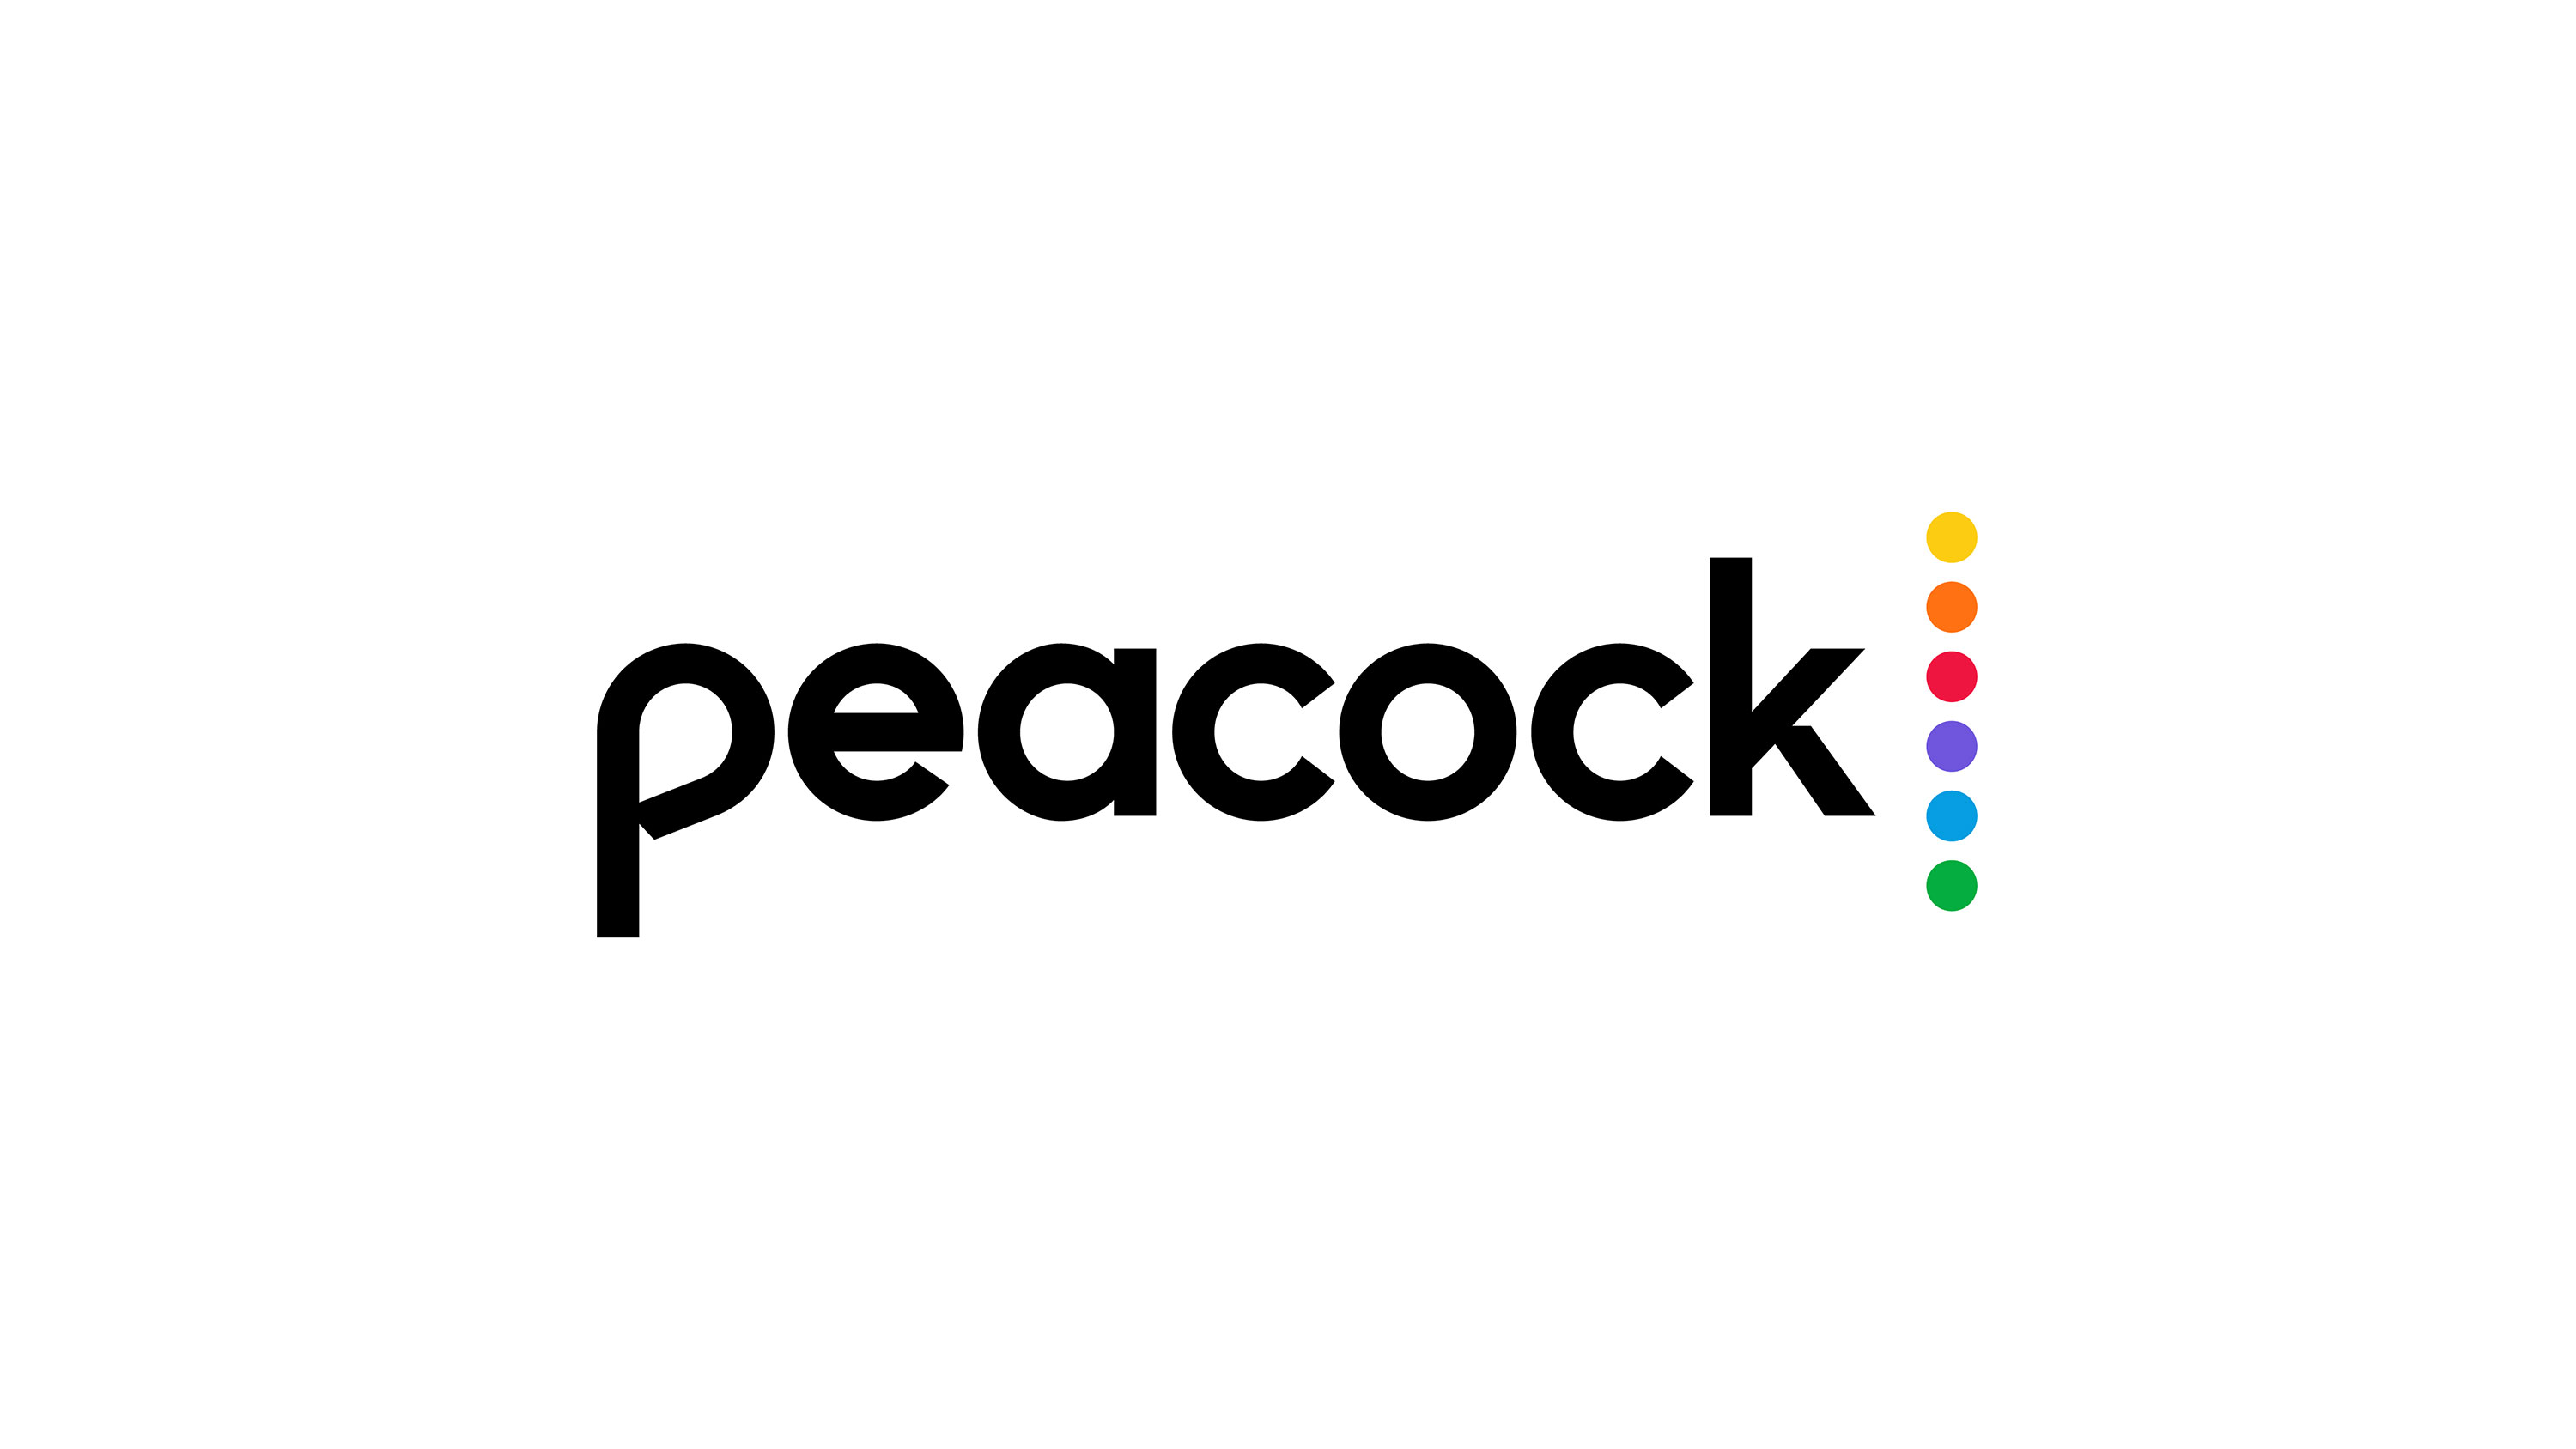 il logo del pavone su sfondo bianco